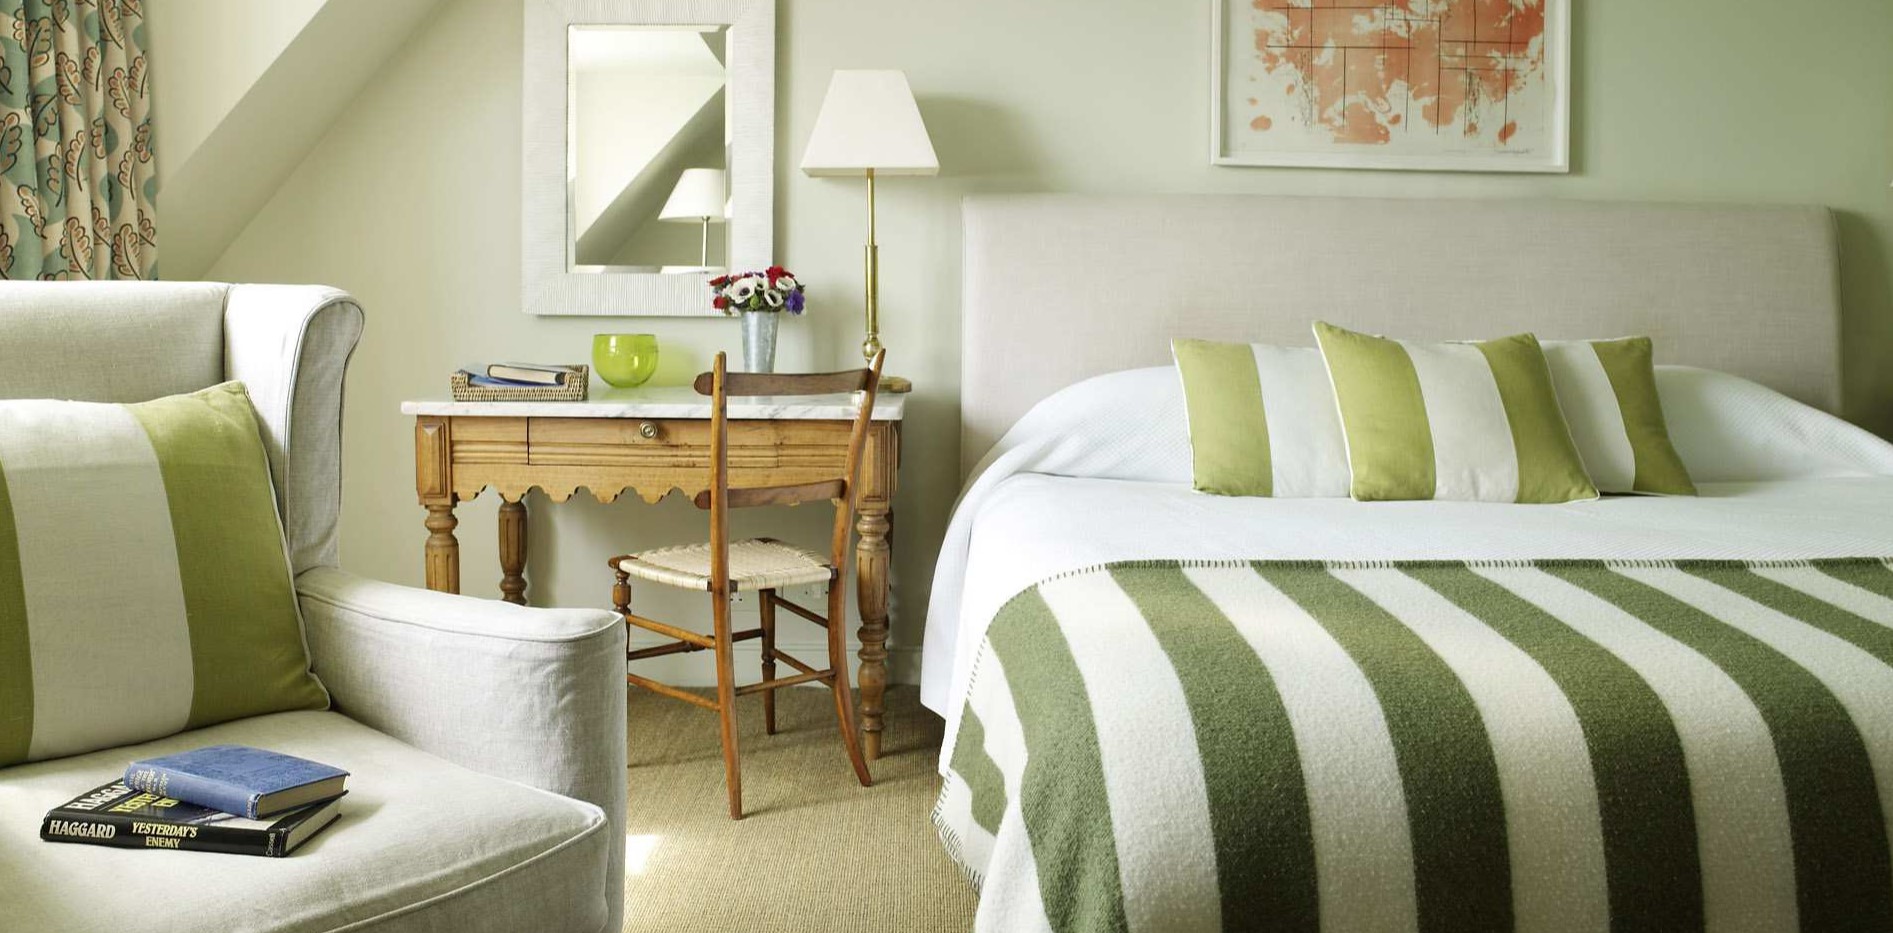 Постельное белье с полосками и винтажный столик помогут создать атмосферу ретро в интерьере спальни